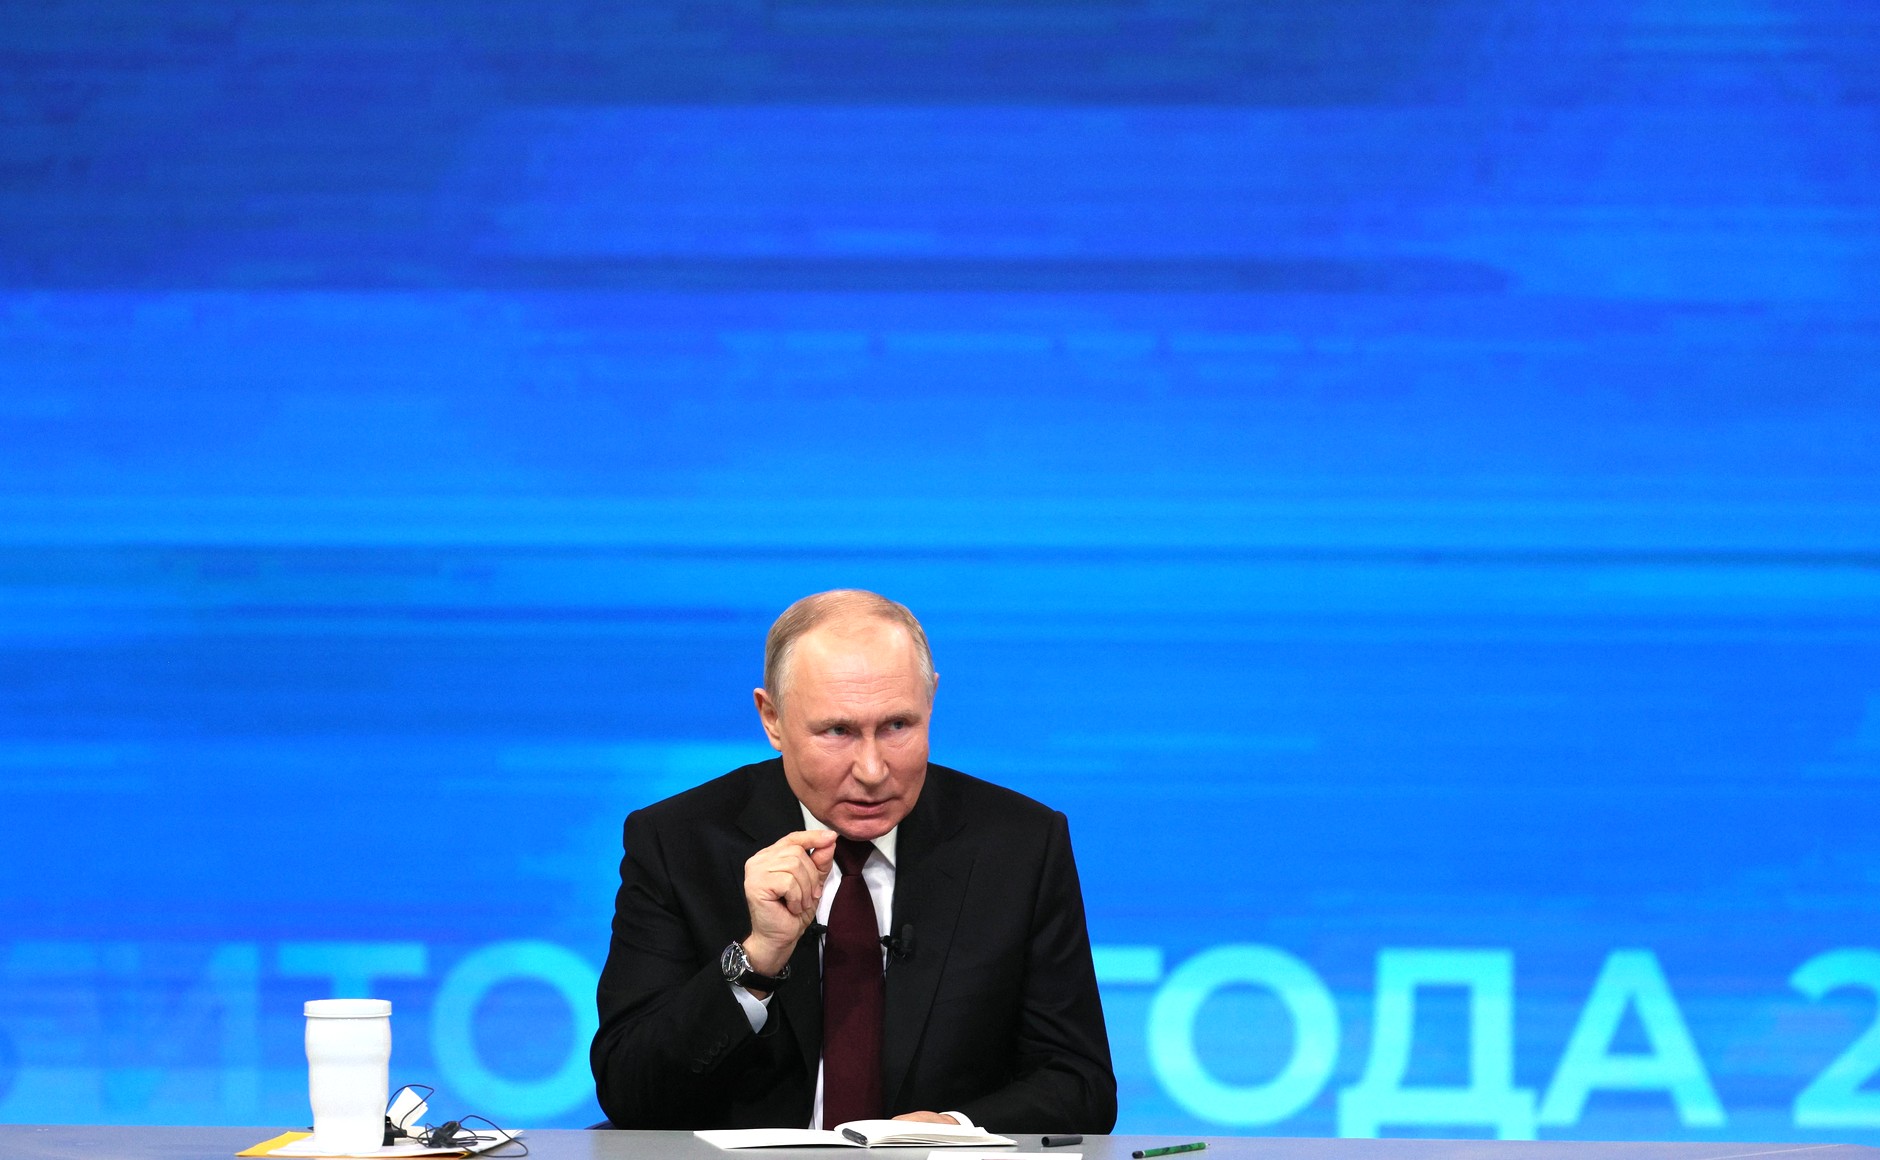 Вы сейчас просматриваете 14 декабря президент России Владимир Путин подвел итоги года на пресс-конференции, которую в этом году объединили с Прямой линией